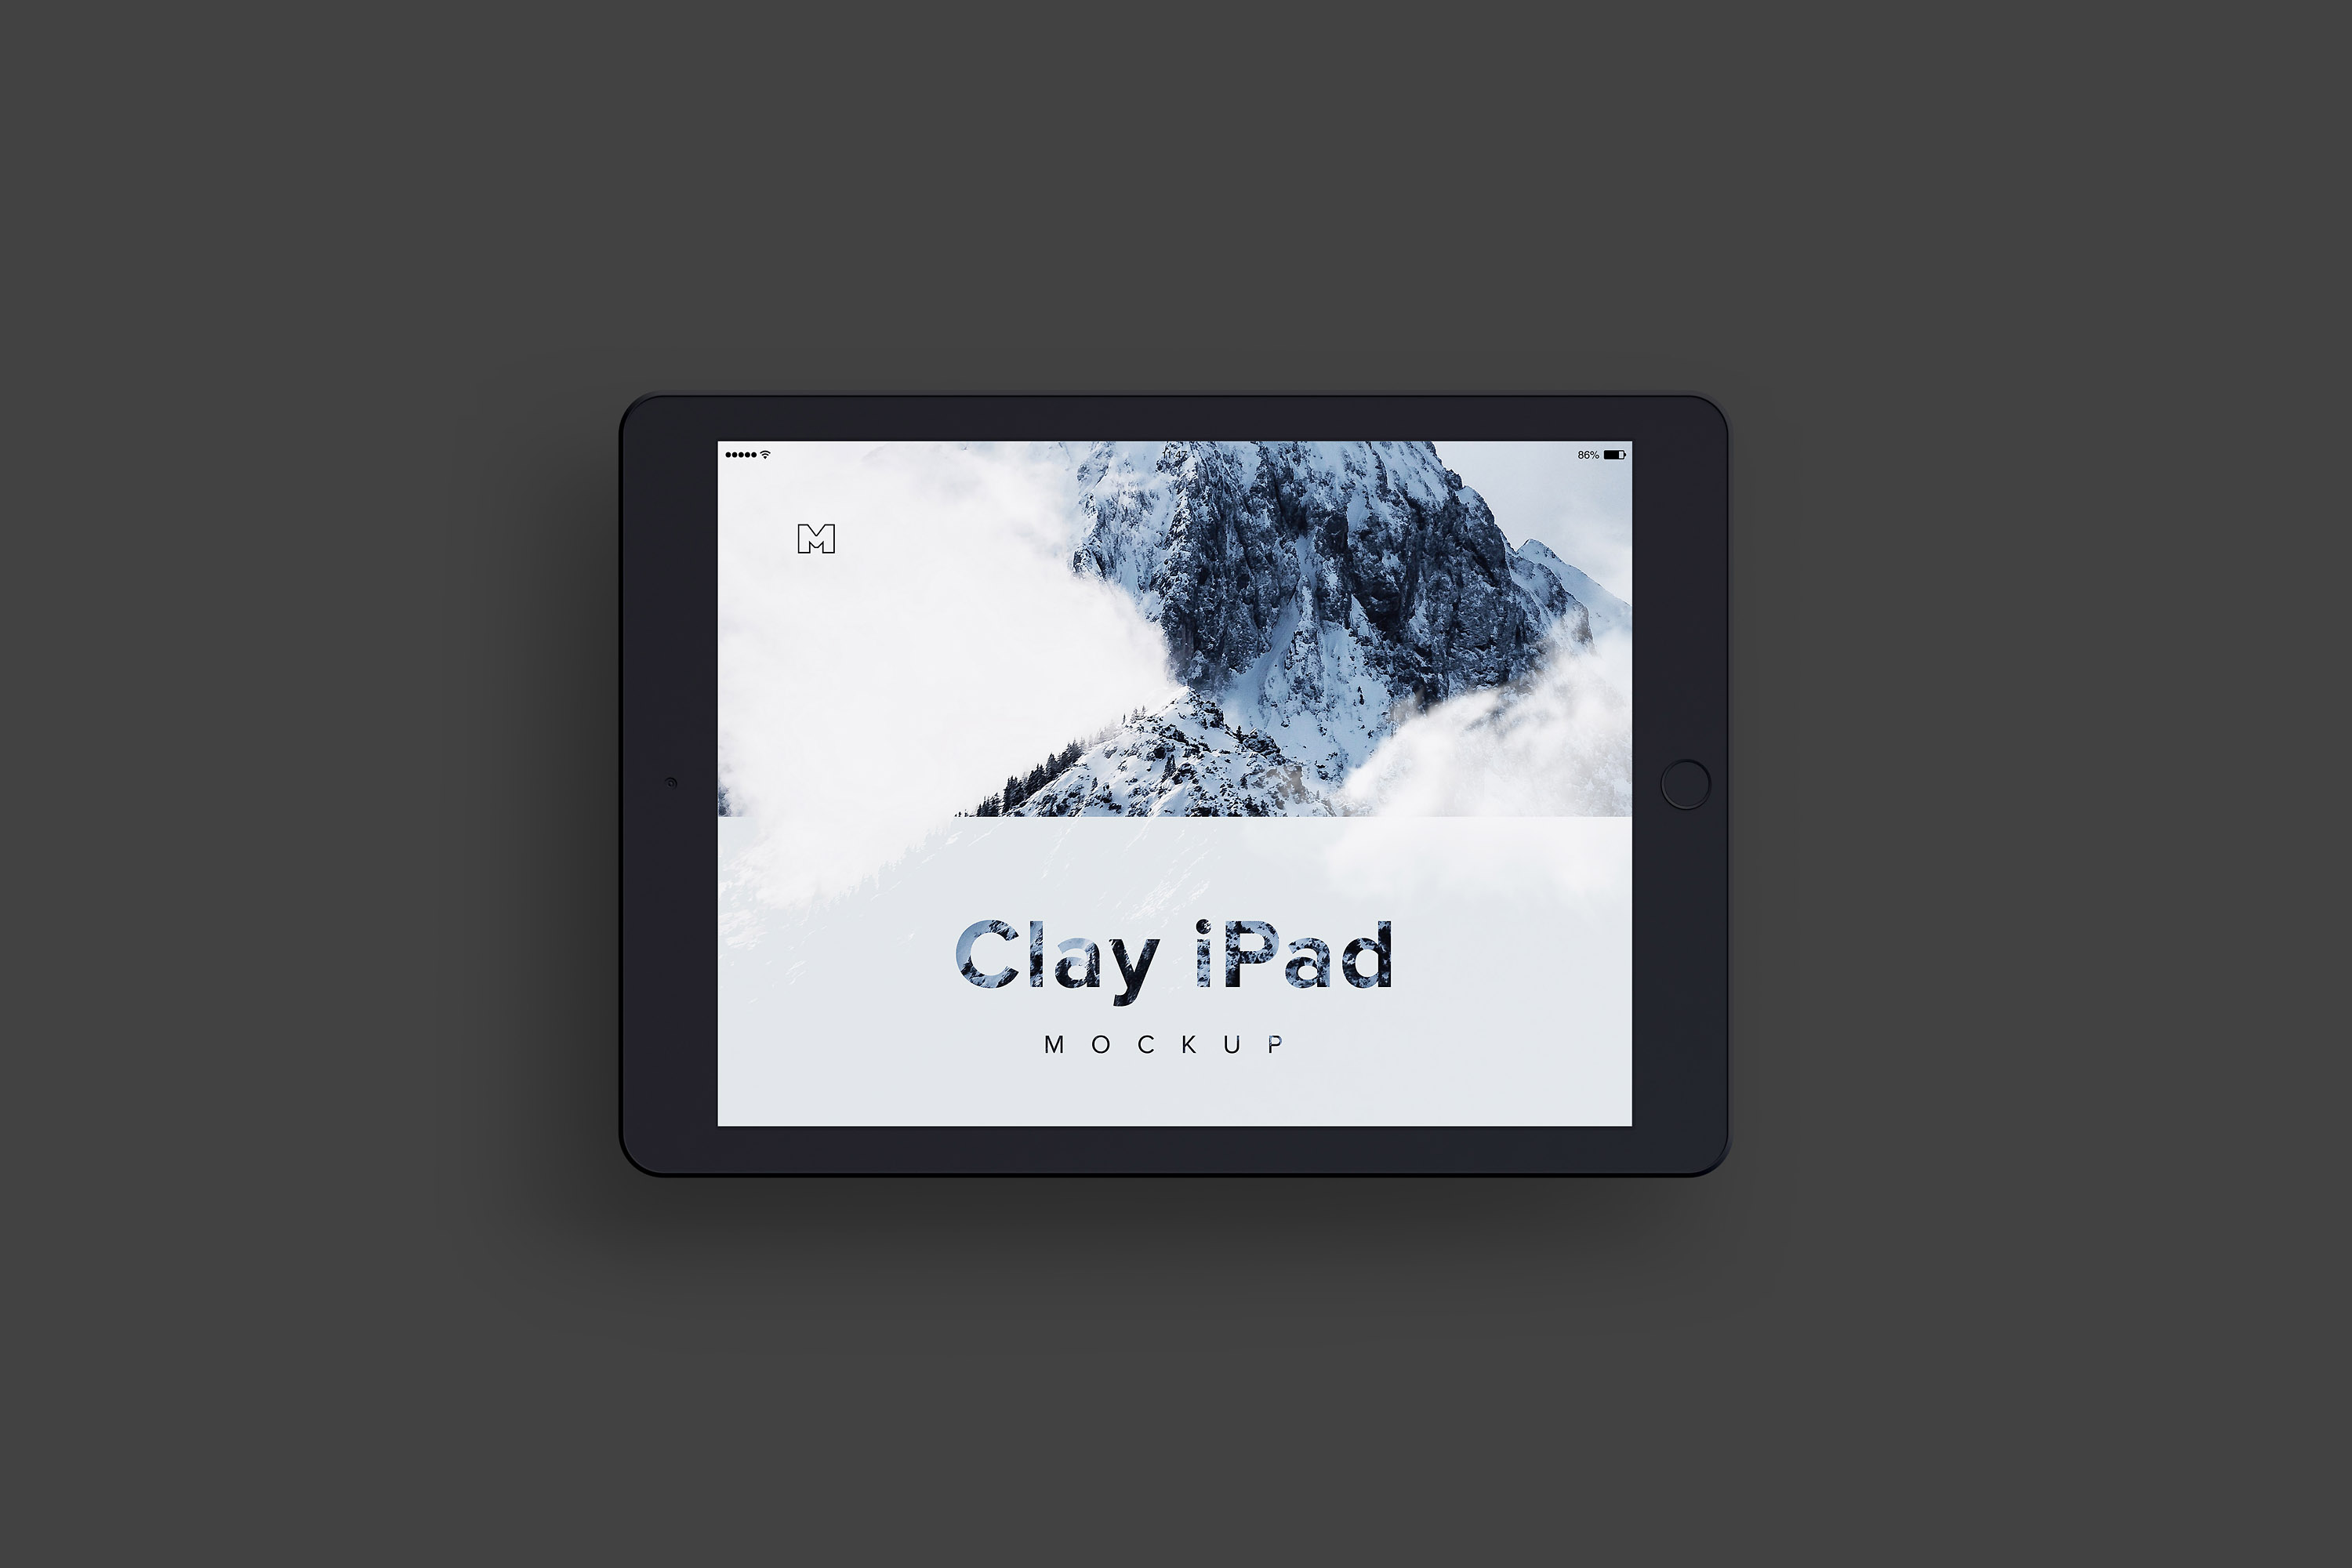 iPad平板电脑屏幕演示俯视图样机04 Clay iPad 9.7 Mockup 04插图(2)